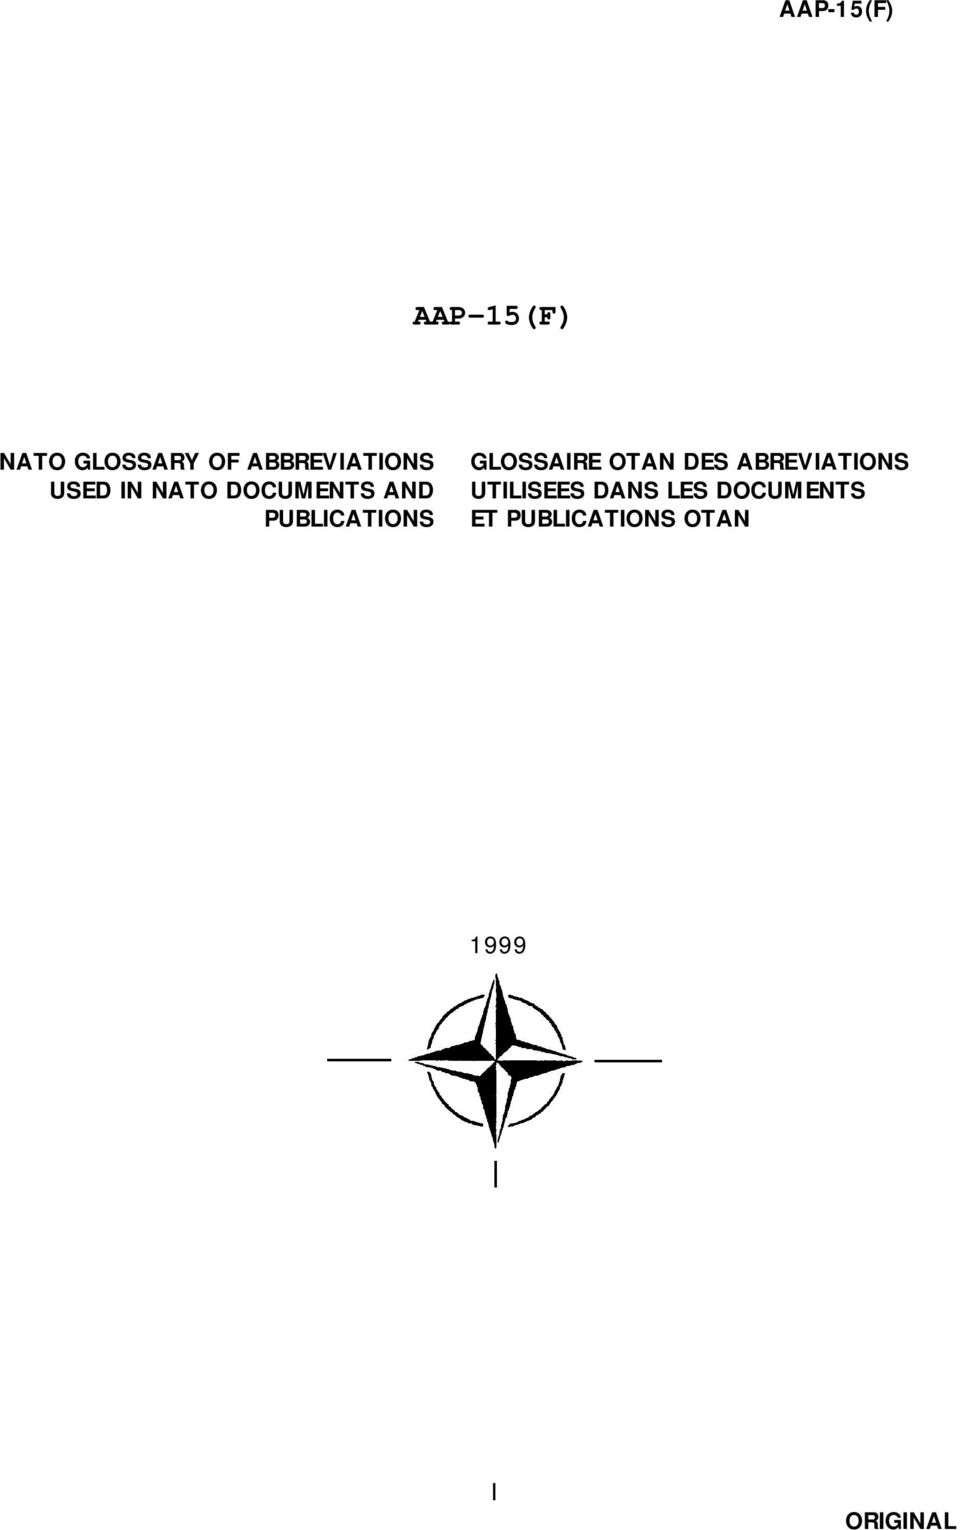 GLOSSAIRE OTAN DES ABREVIATIONS UTILISEES